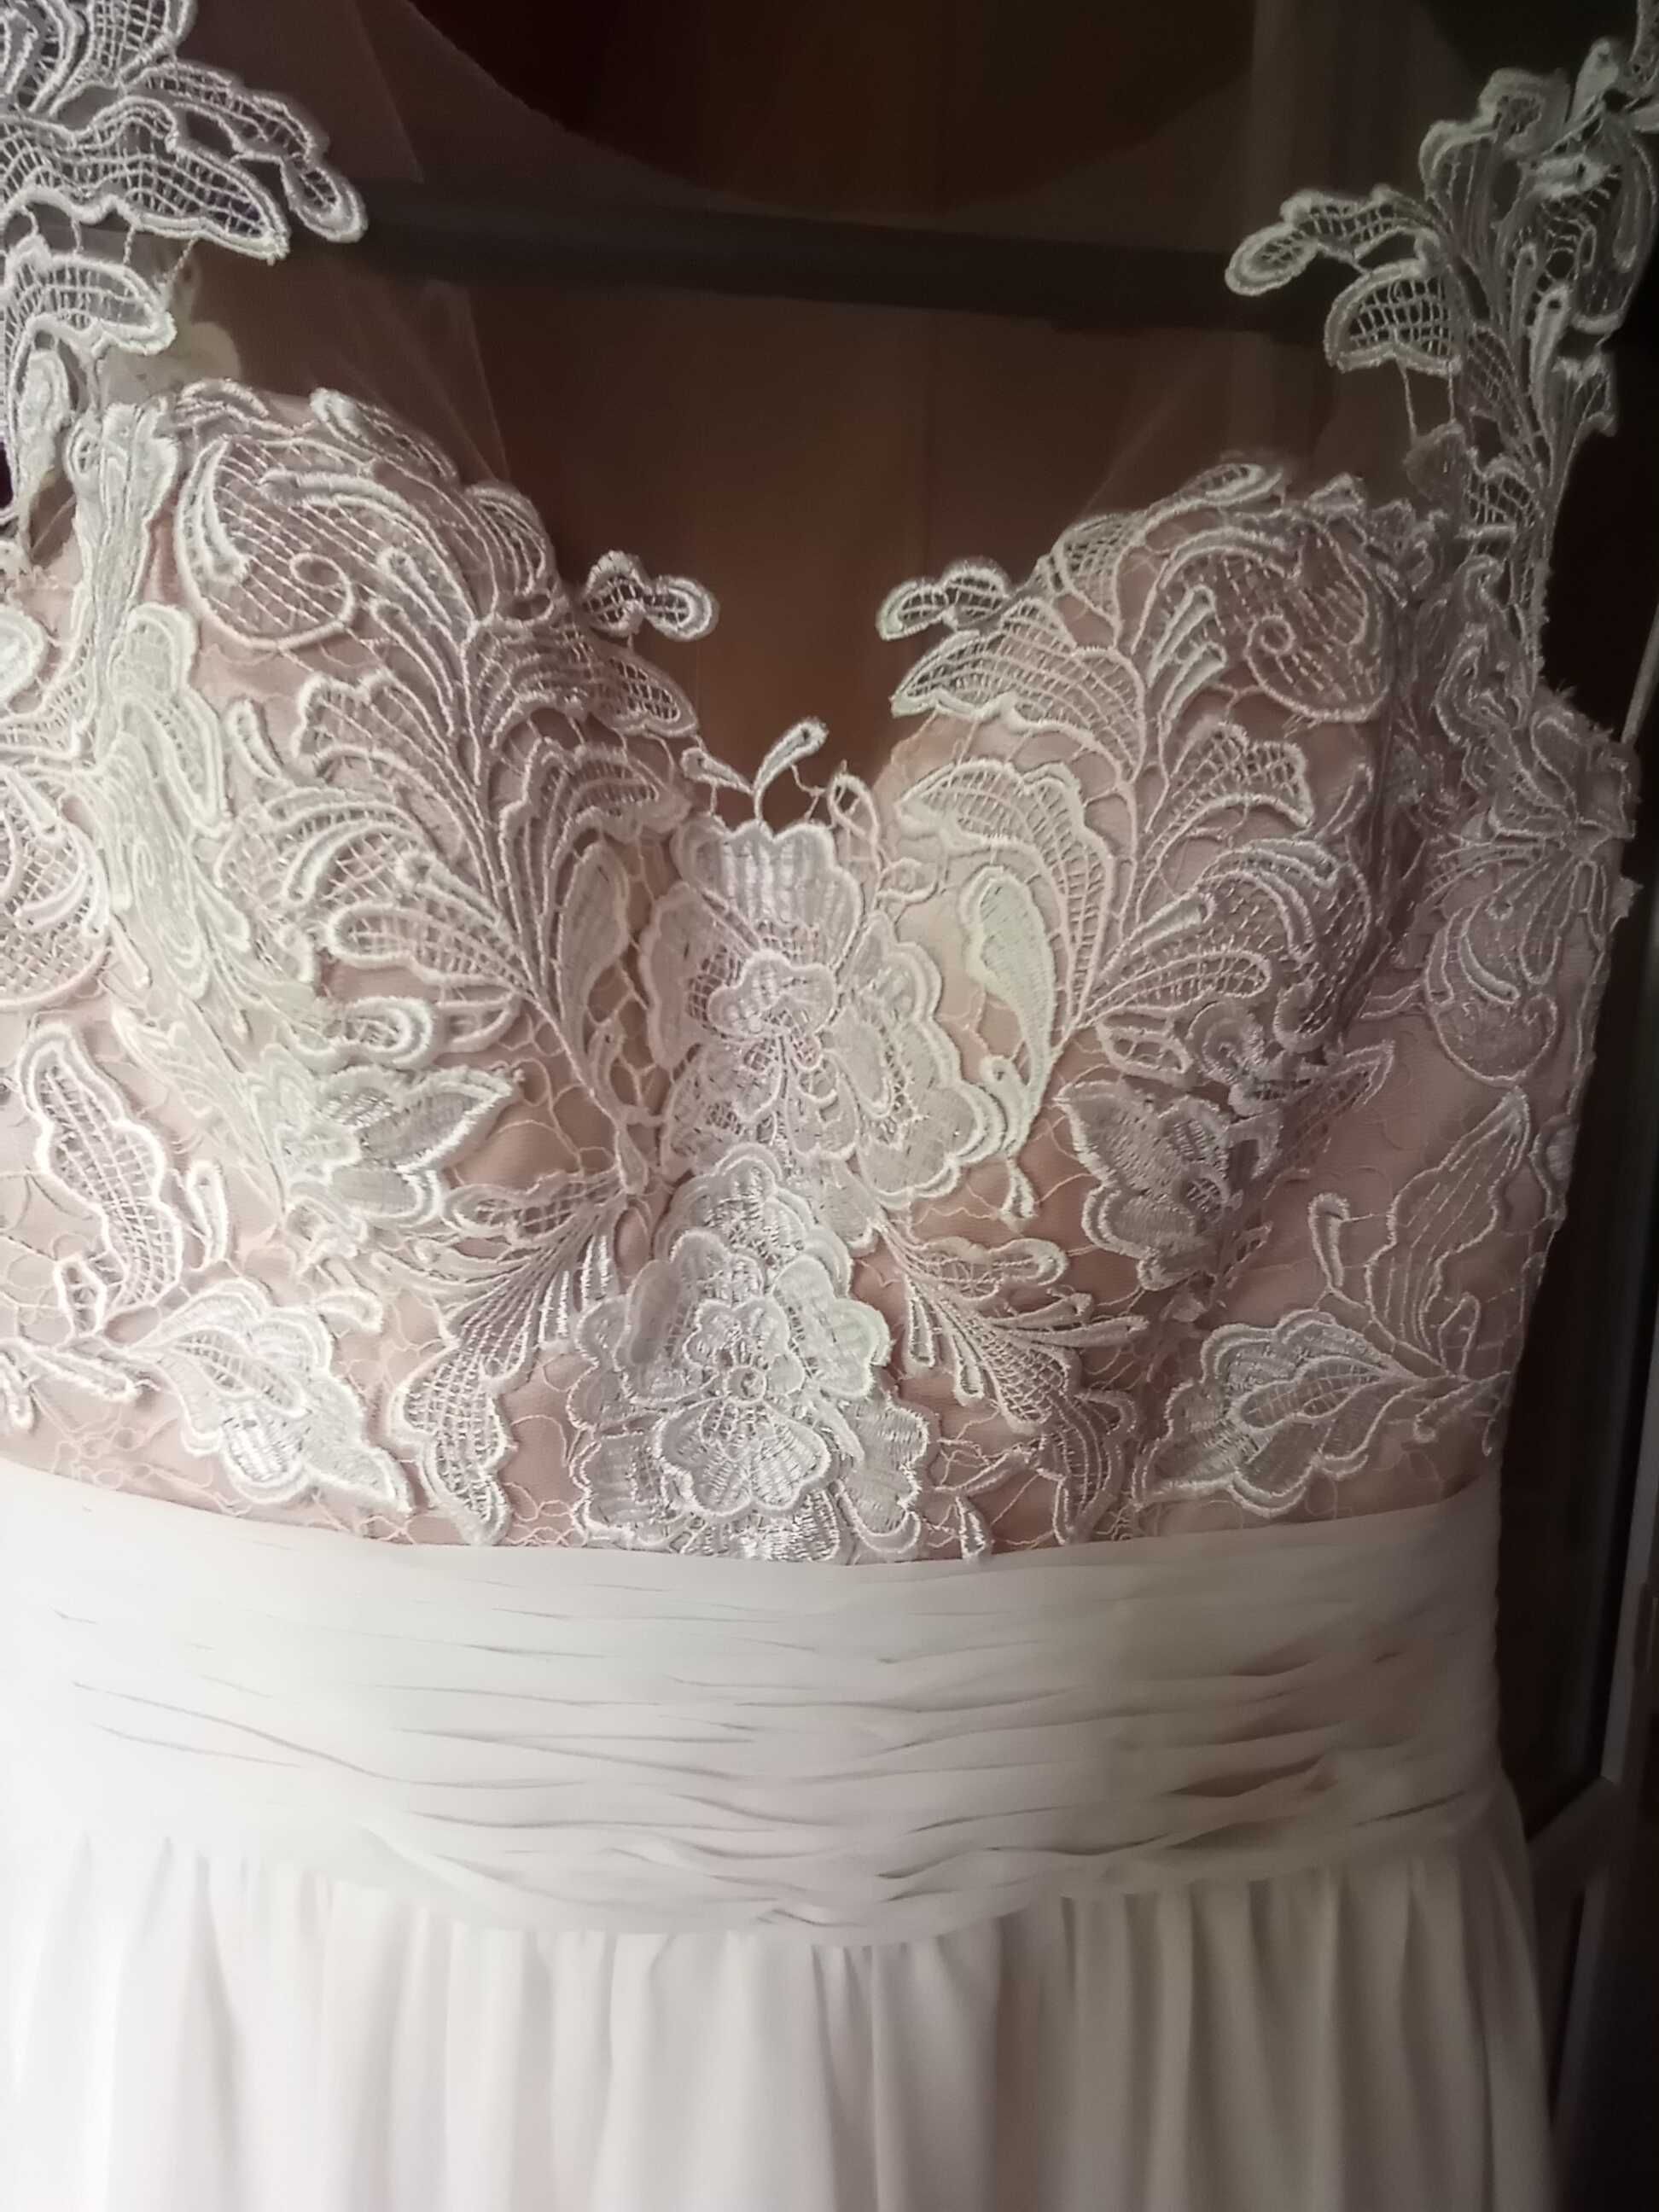 Продам б/у свадебное платье